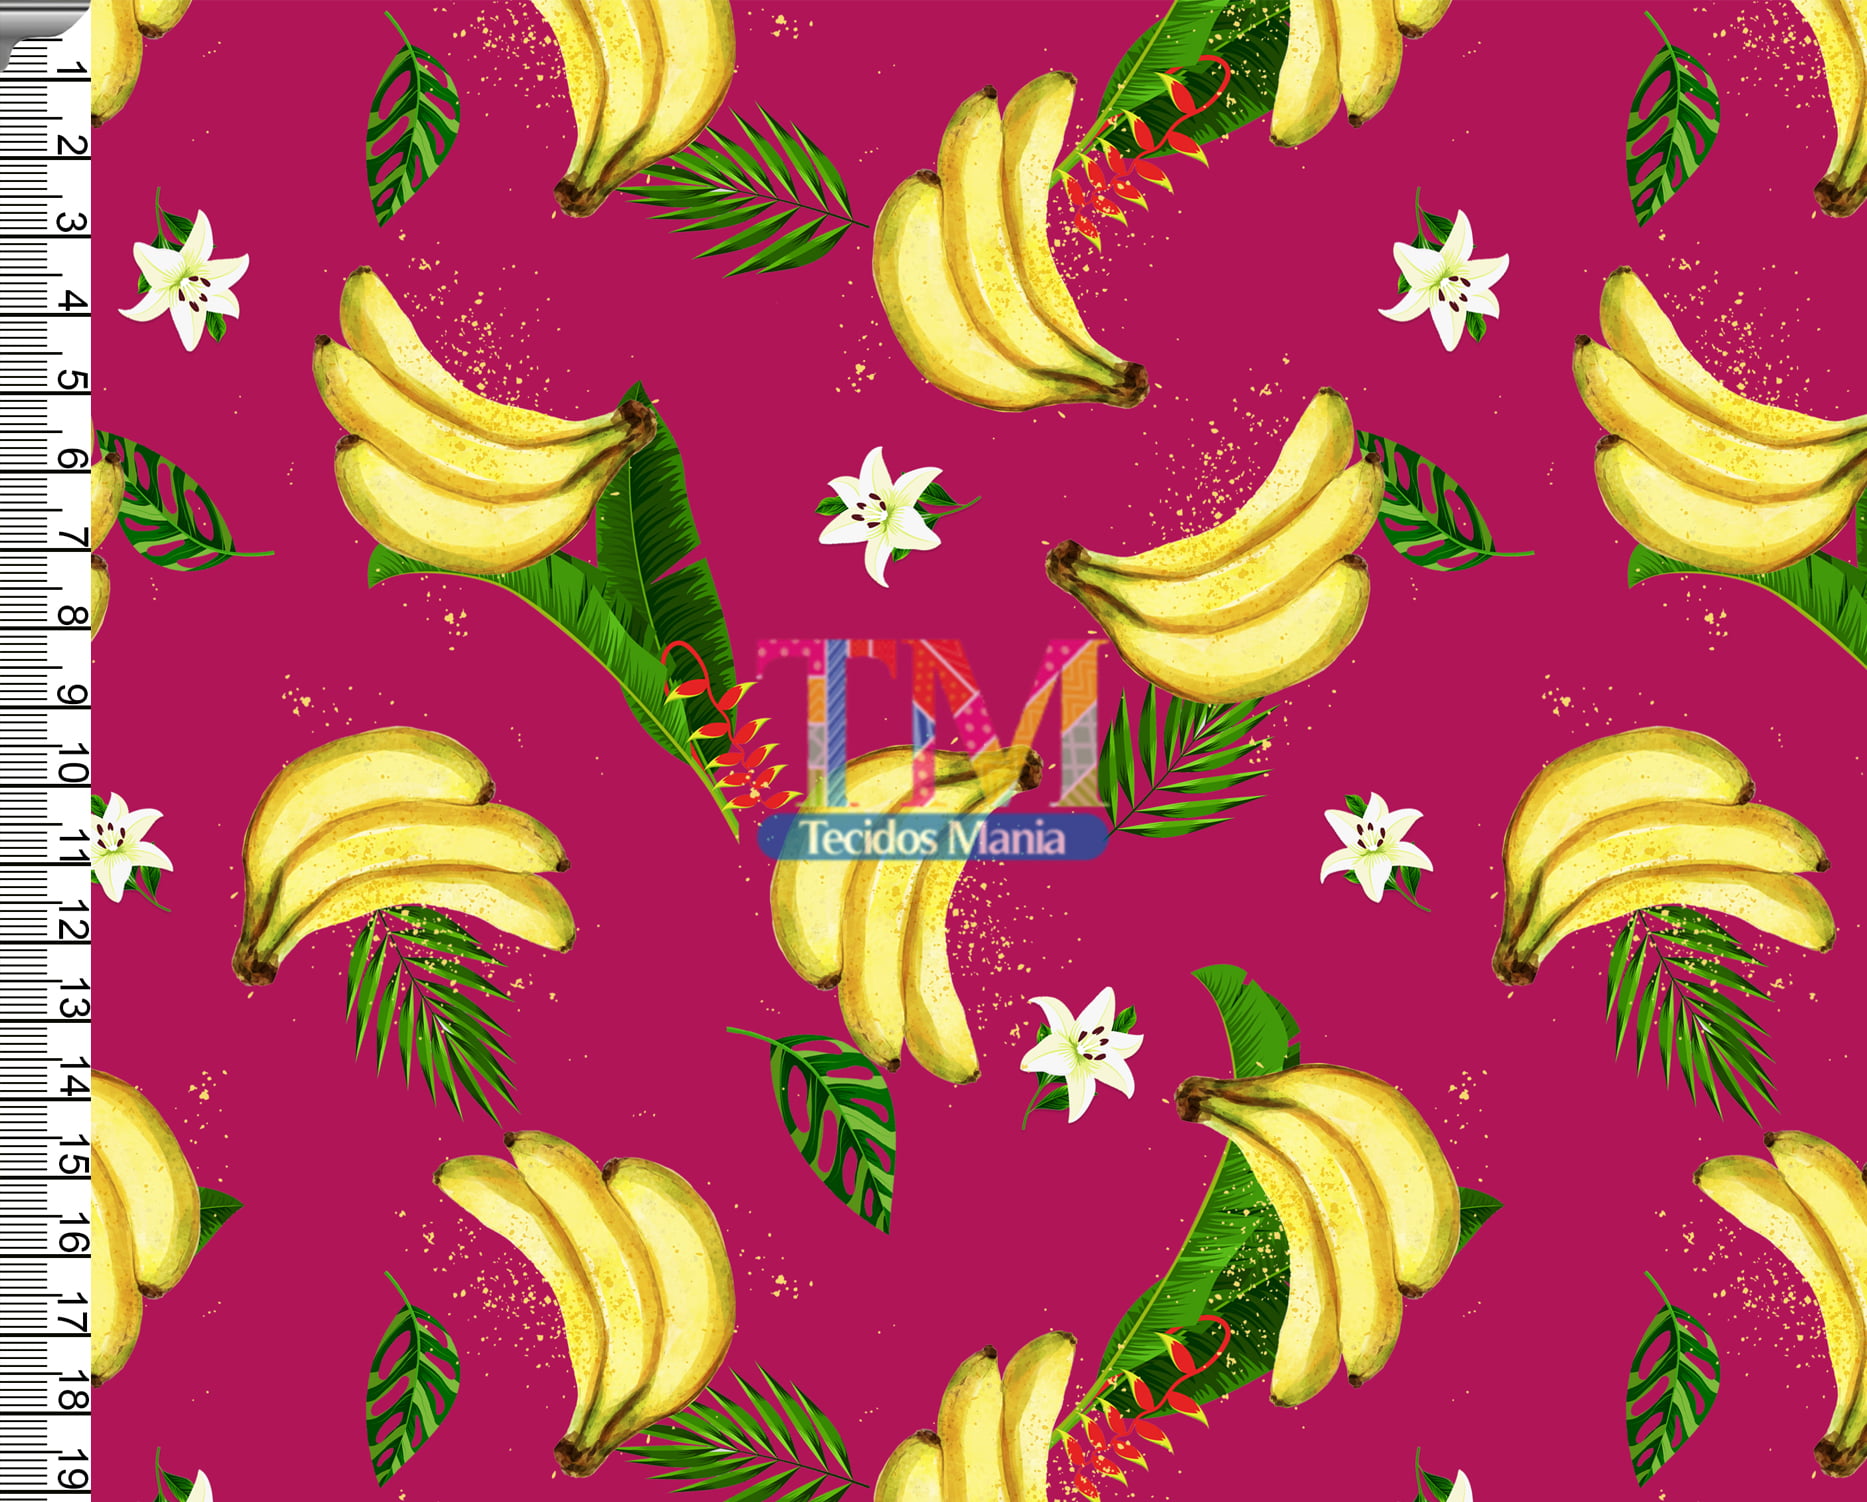 Tecido tricoline, microfibra ou gabardine estampado - bananas - fundo pink